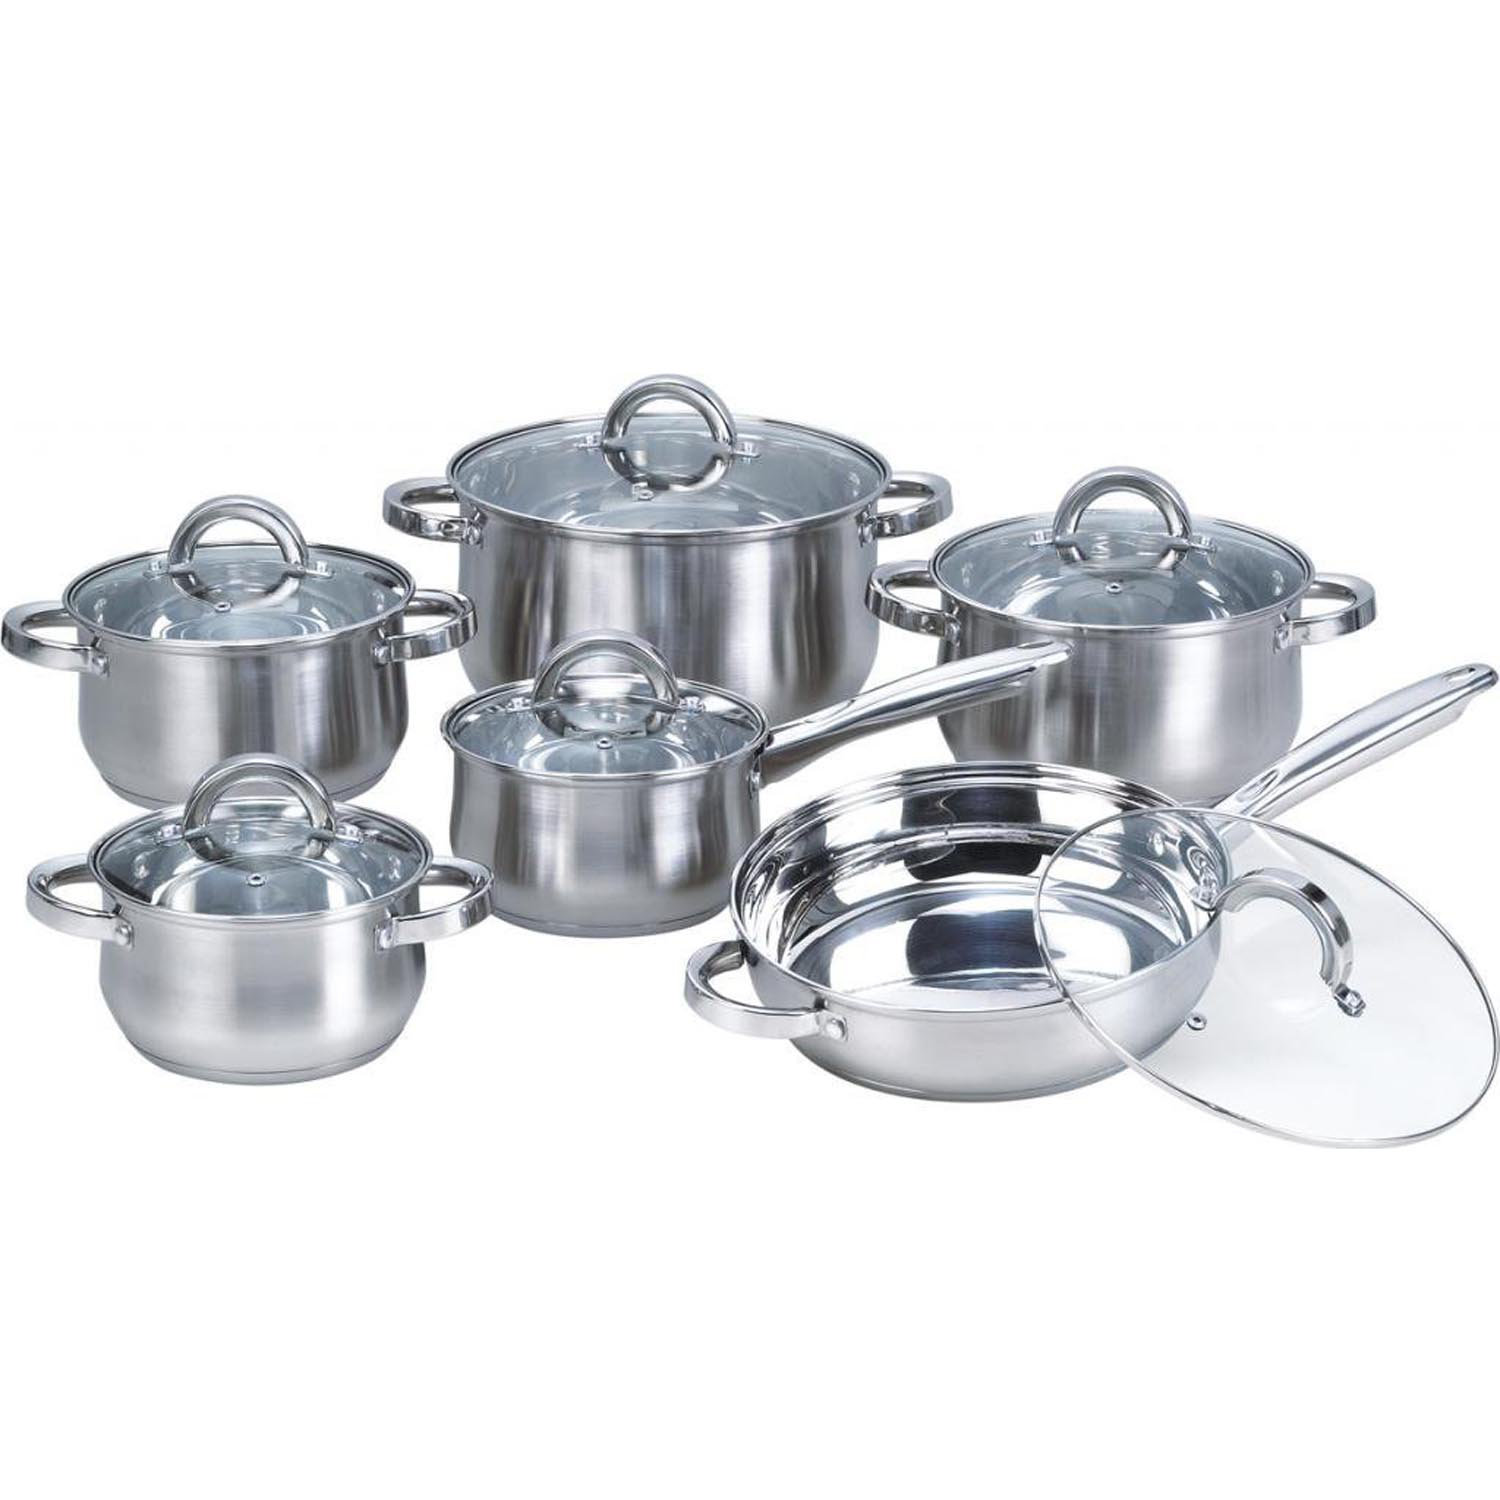 https://assets.wfcdn.com/im/02066780/compr-r85/2877/28779074/12-piece-stainless-steel-cookware-set.jpg